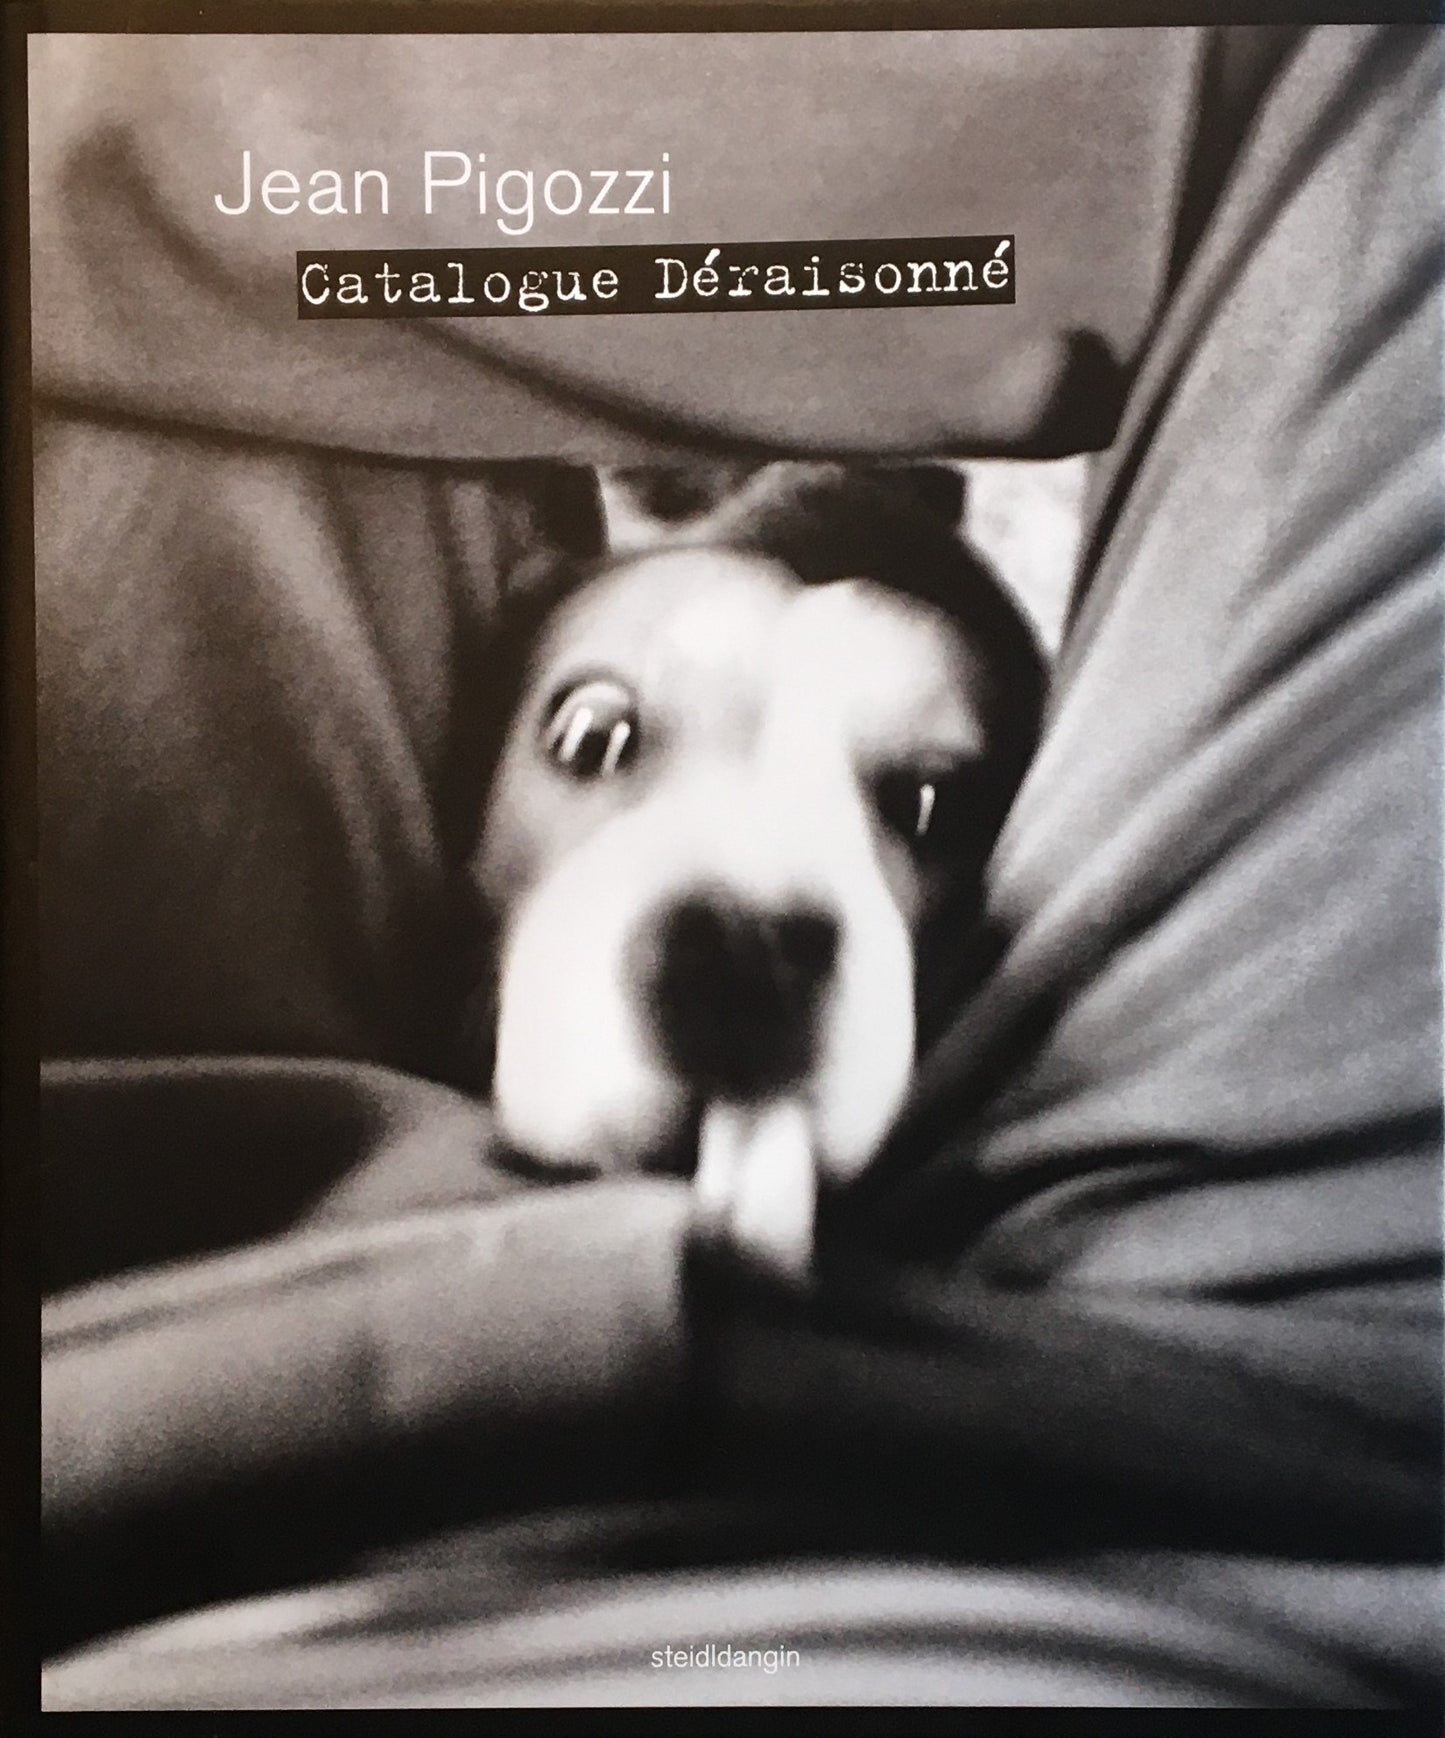 ジャン・ピゴッツィ Jean Pigozzi Catalogue Deraisonne